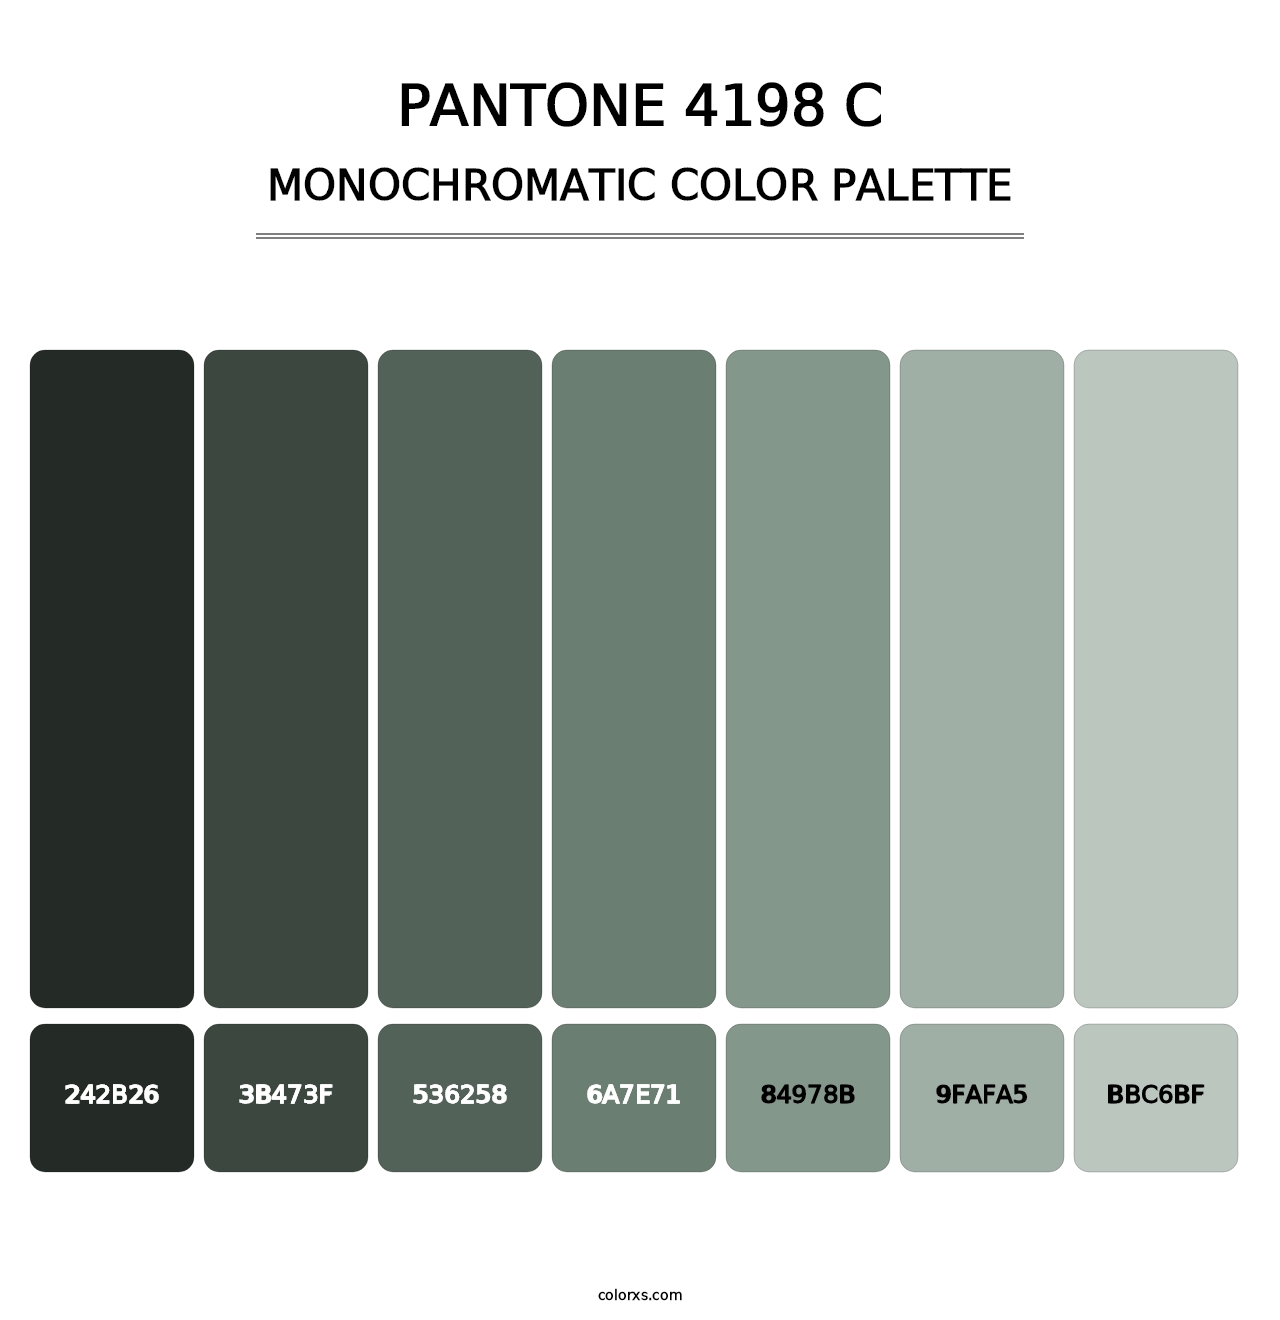 PANTONE 4198 C - Monochromatic Color Palette